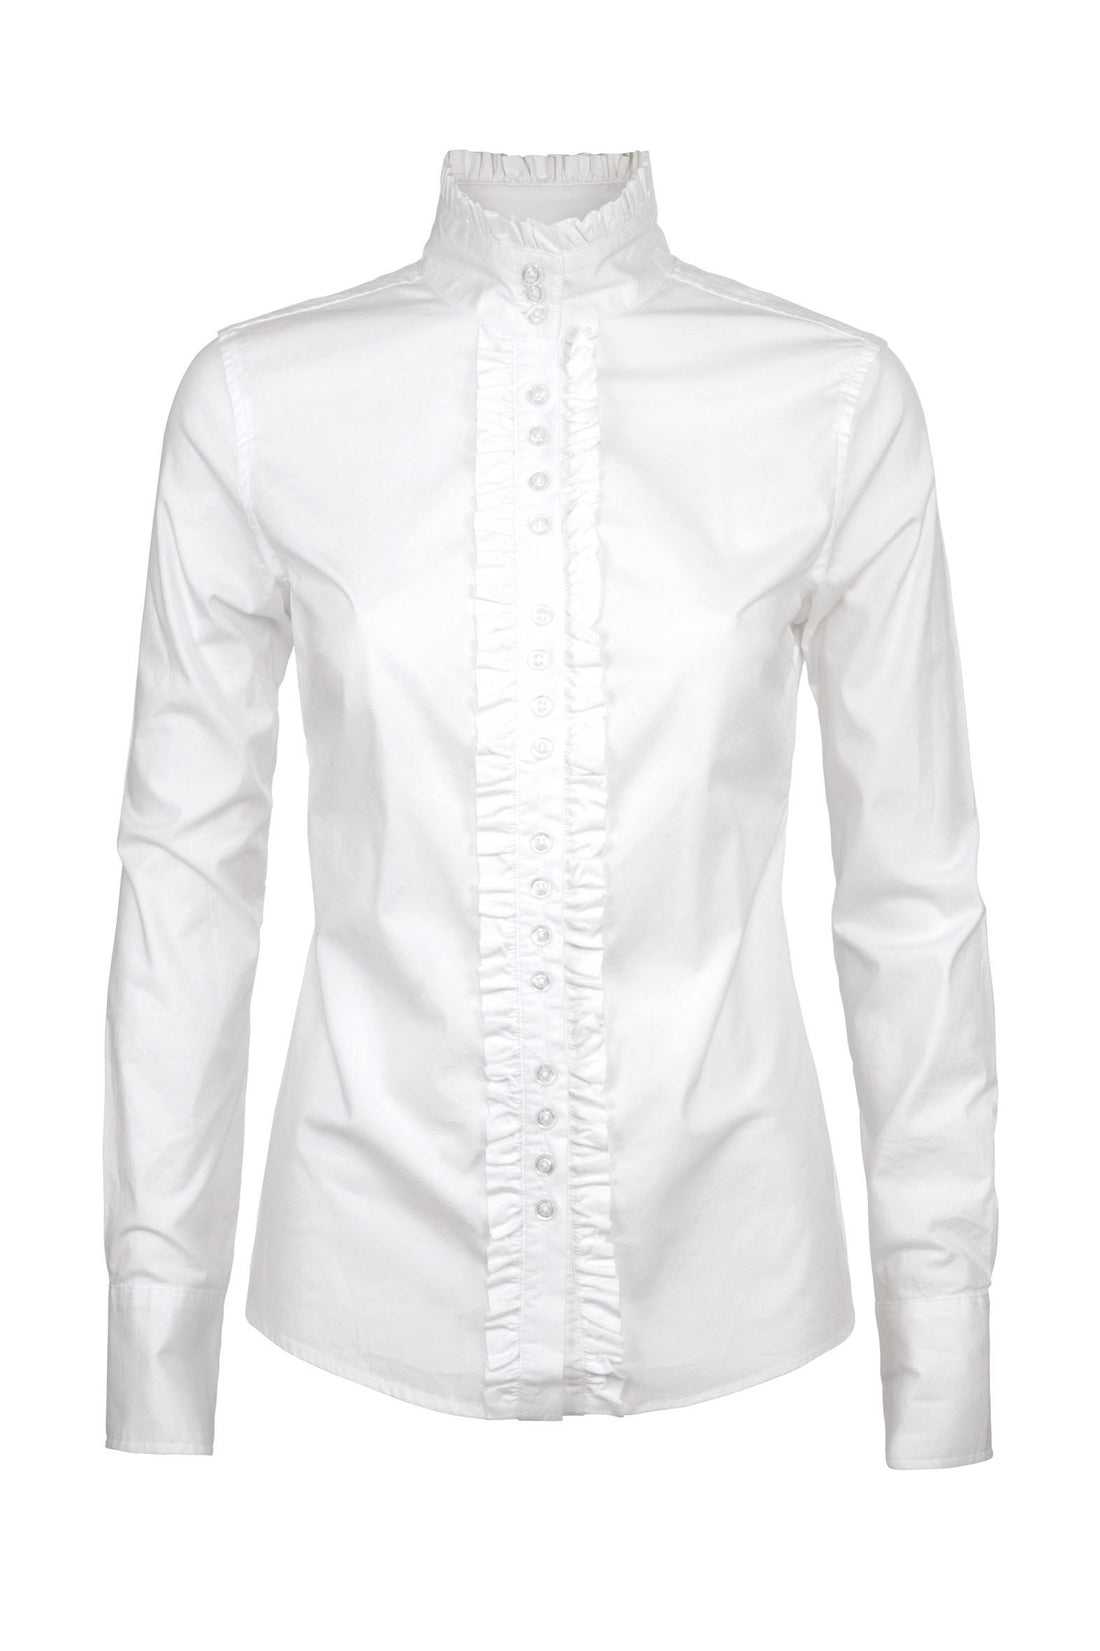 Chamomile Shirt - White